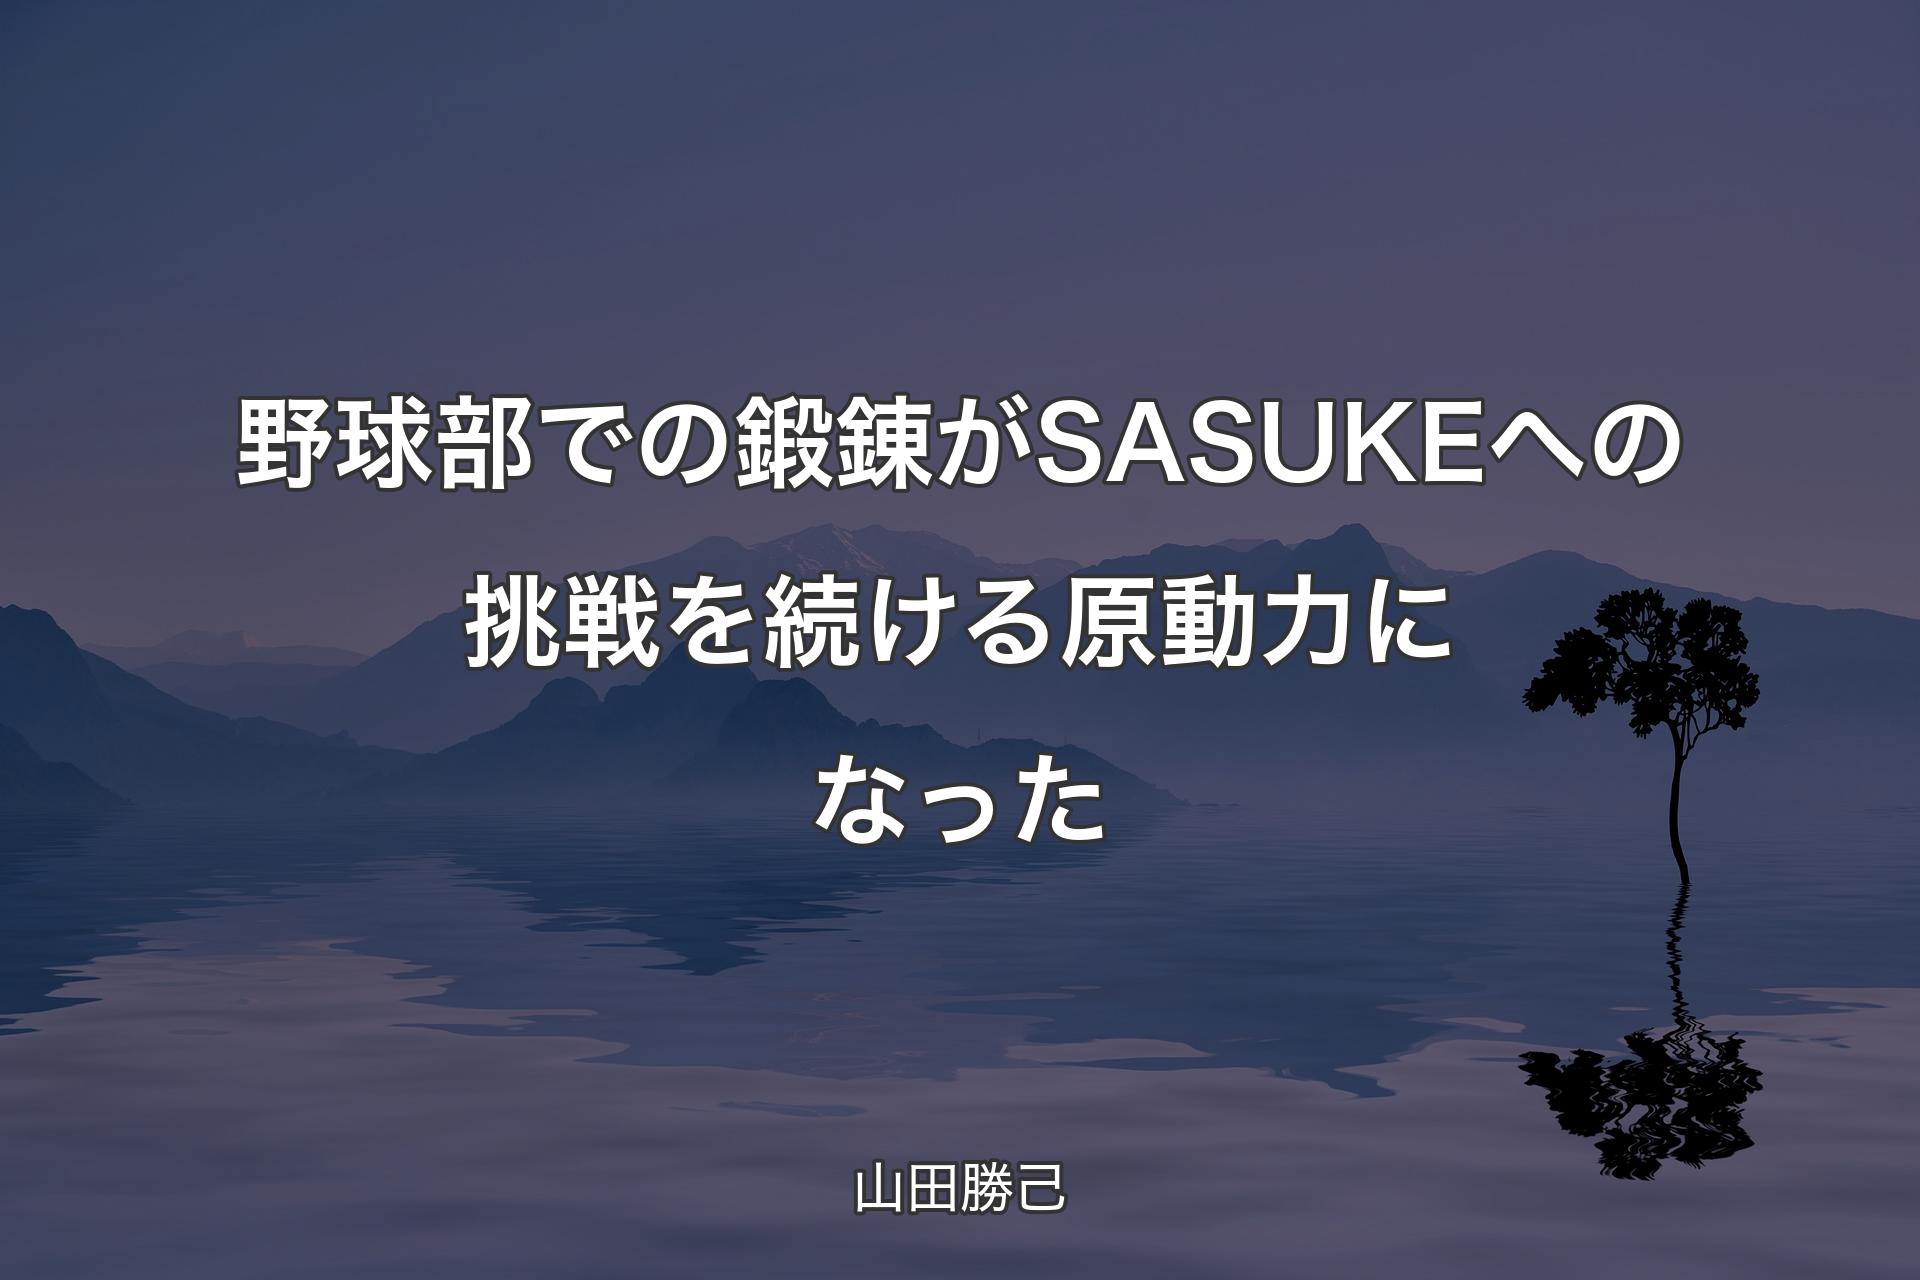 【背景4】野球部での鍛錬がSASUKEへの挑戦を続ける原動力になった - 山田勝己